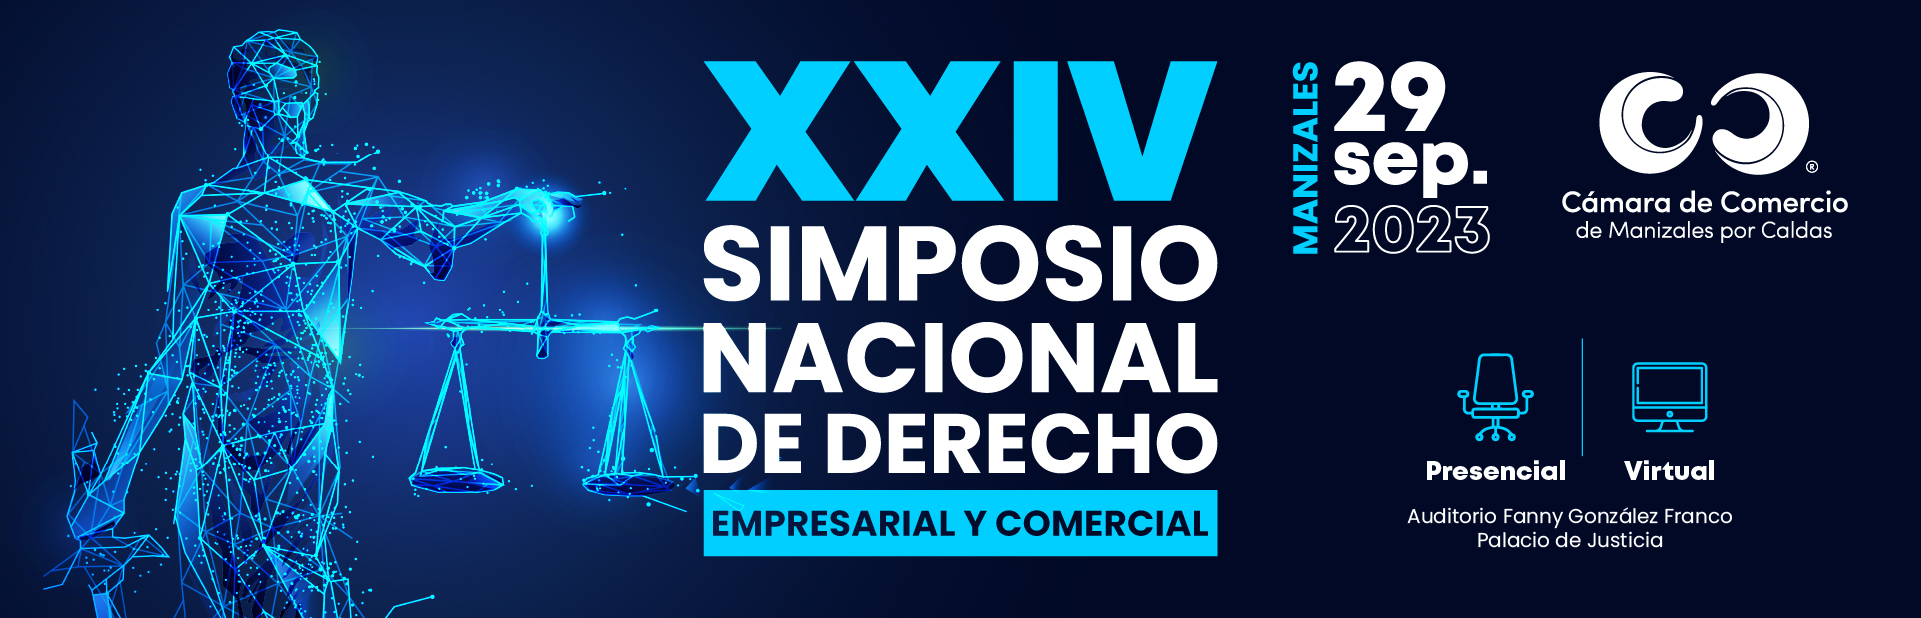 Banner Simposio Nacional de Derecho